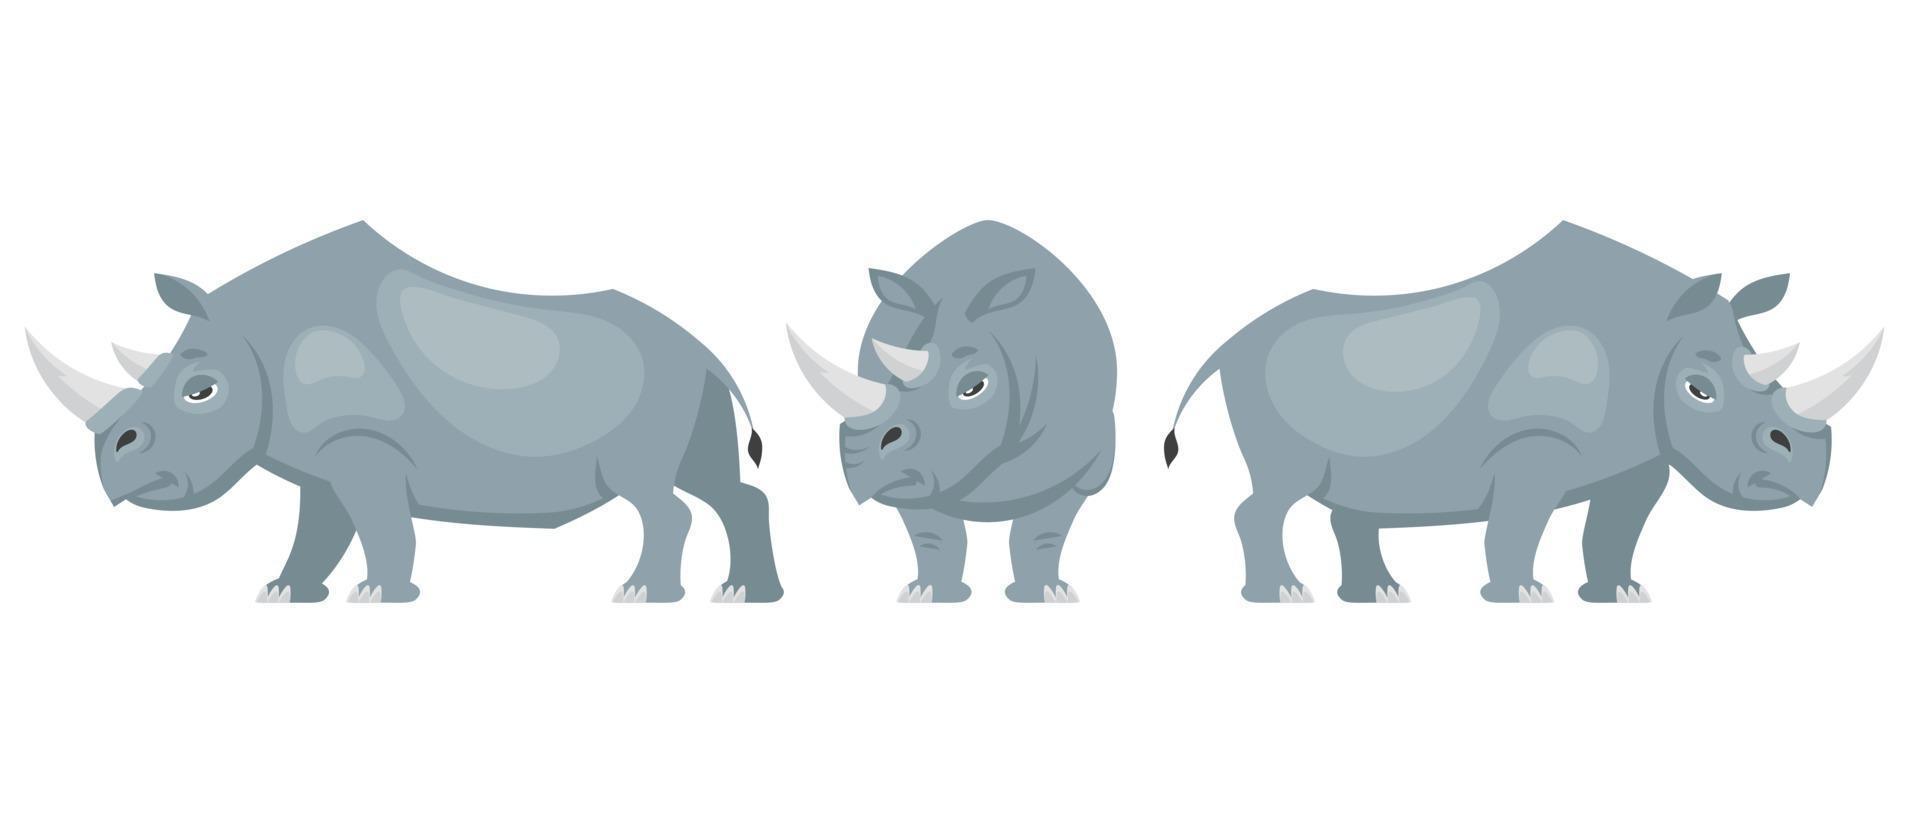 rinoceronte em diferentes poses. vetor